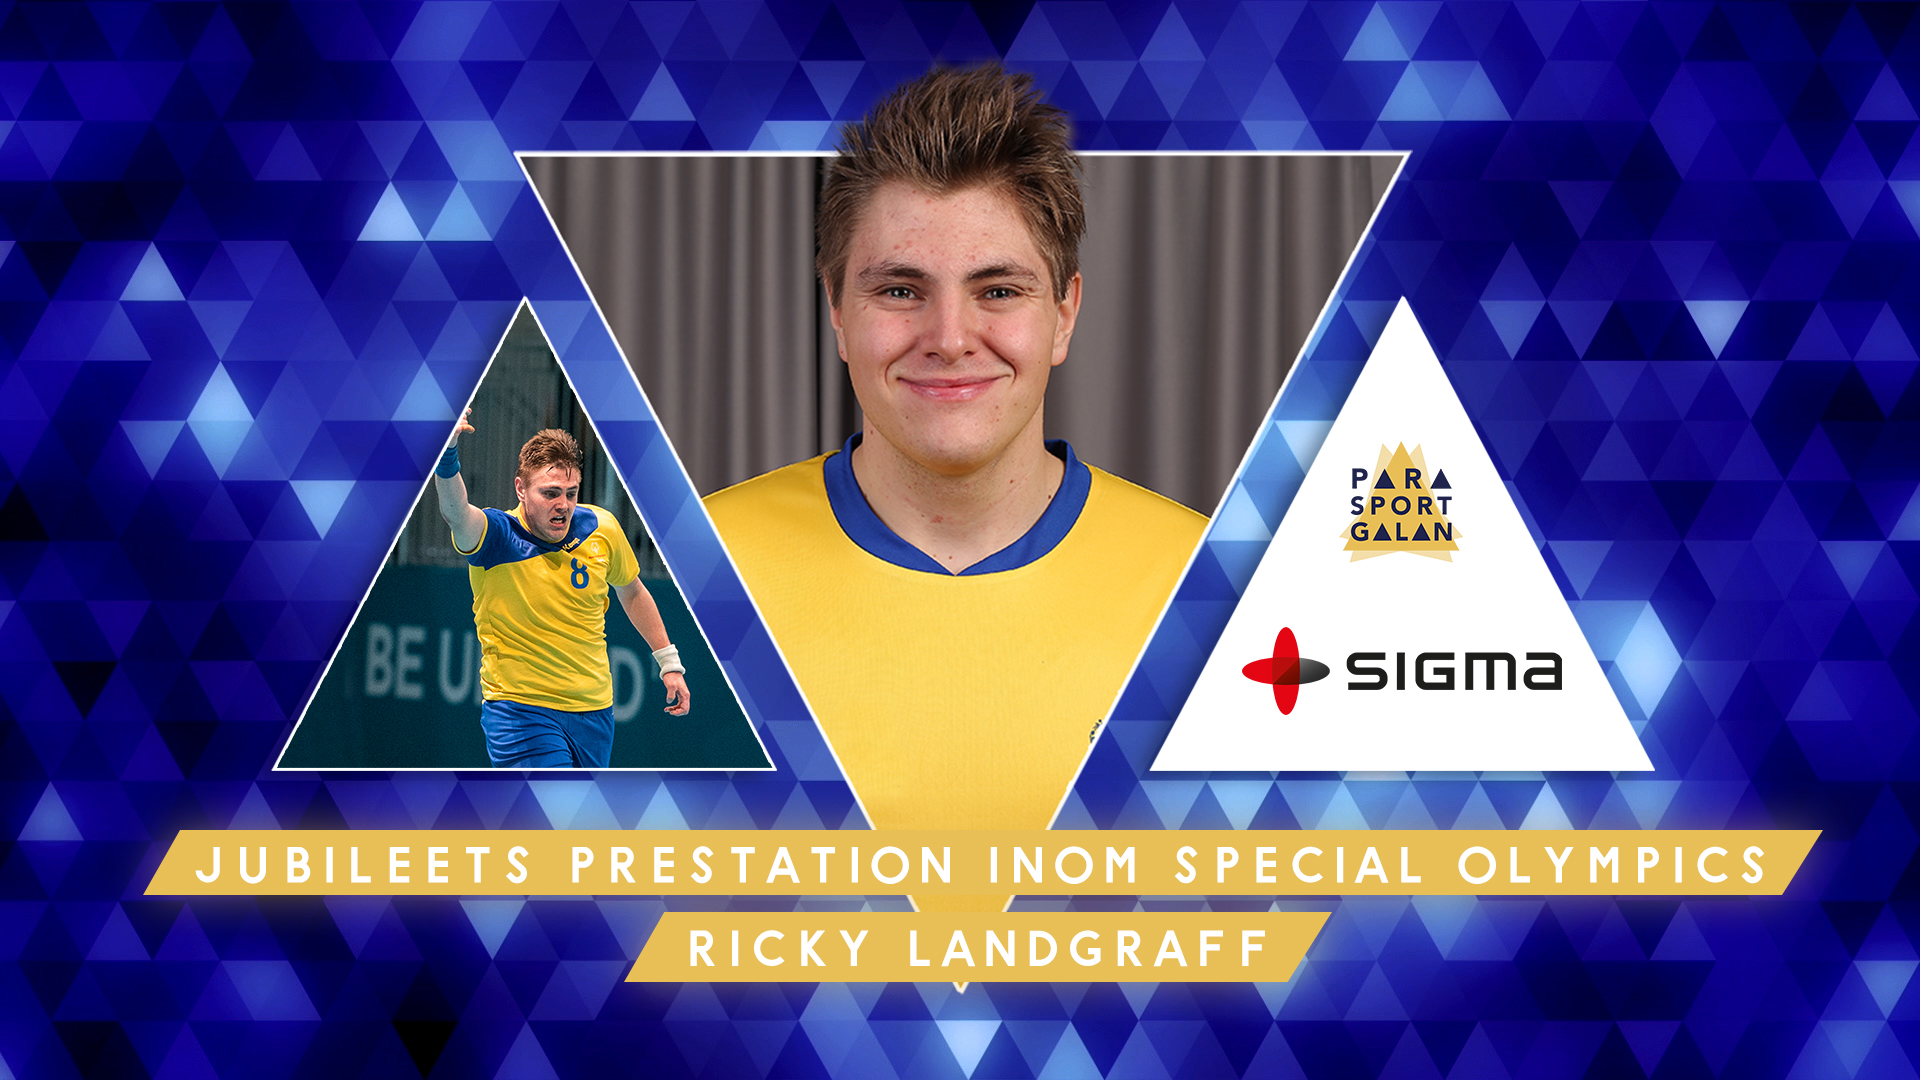 Ricky Landraff - jubileets prestation inom Special Olympics